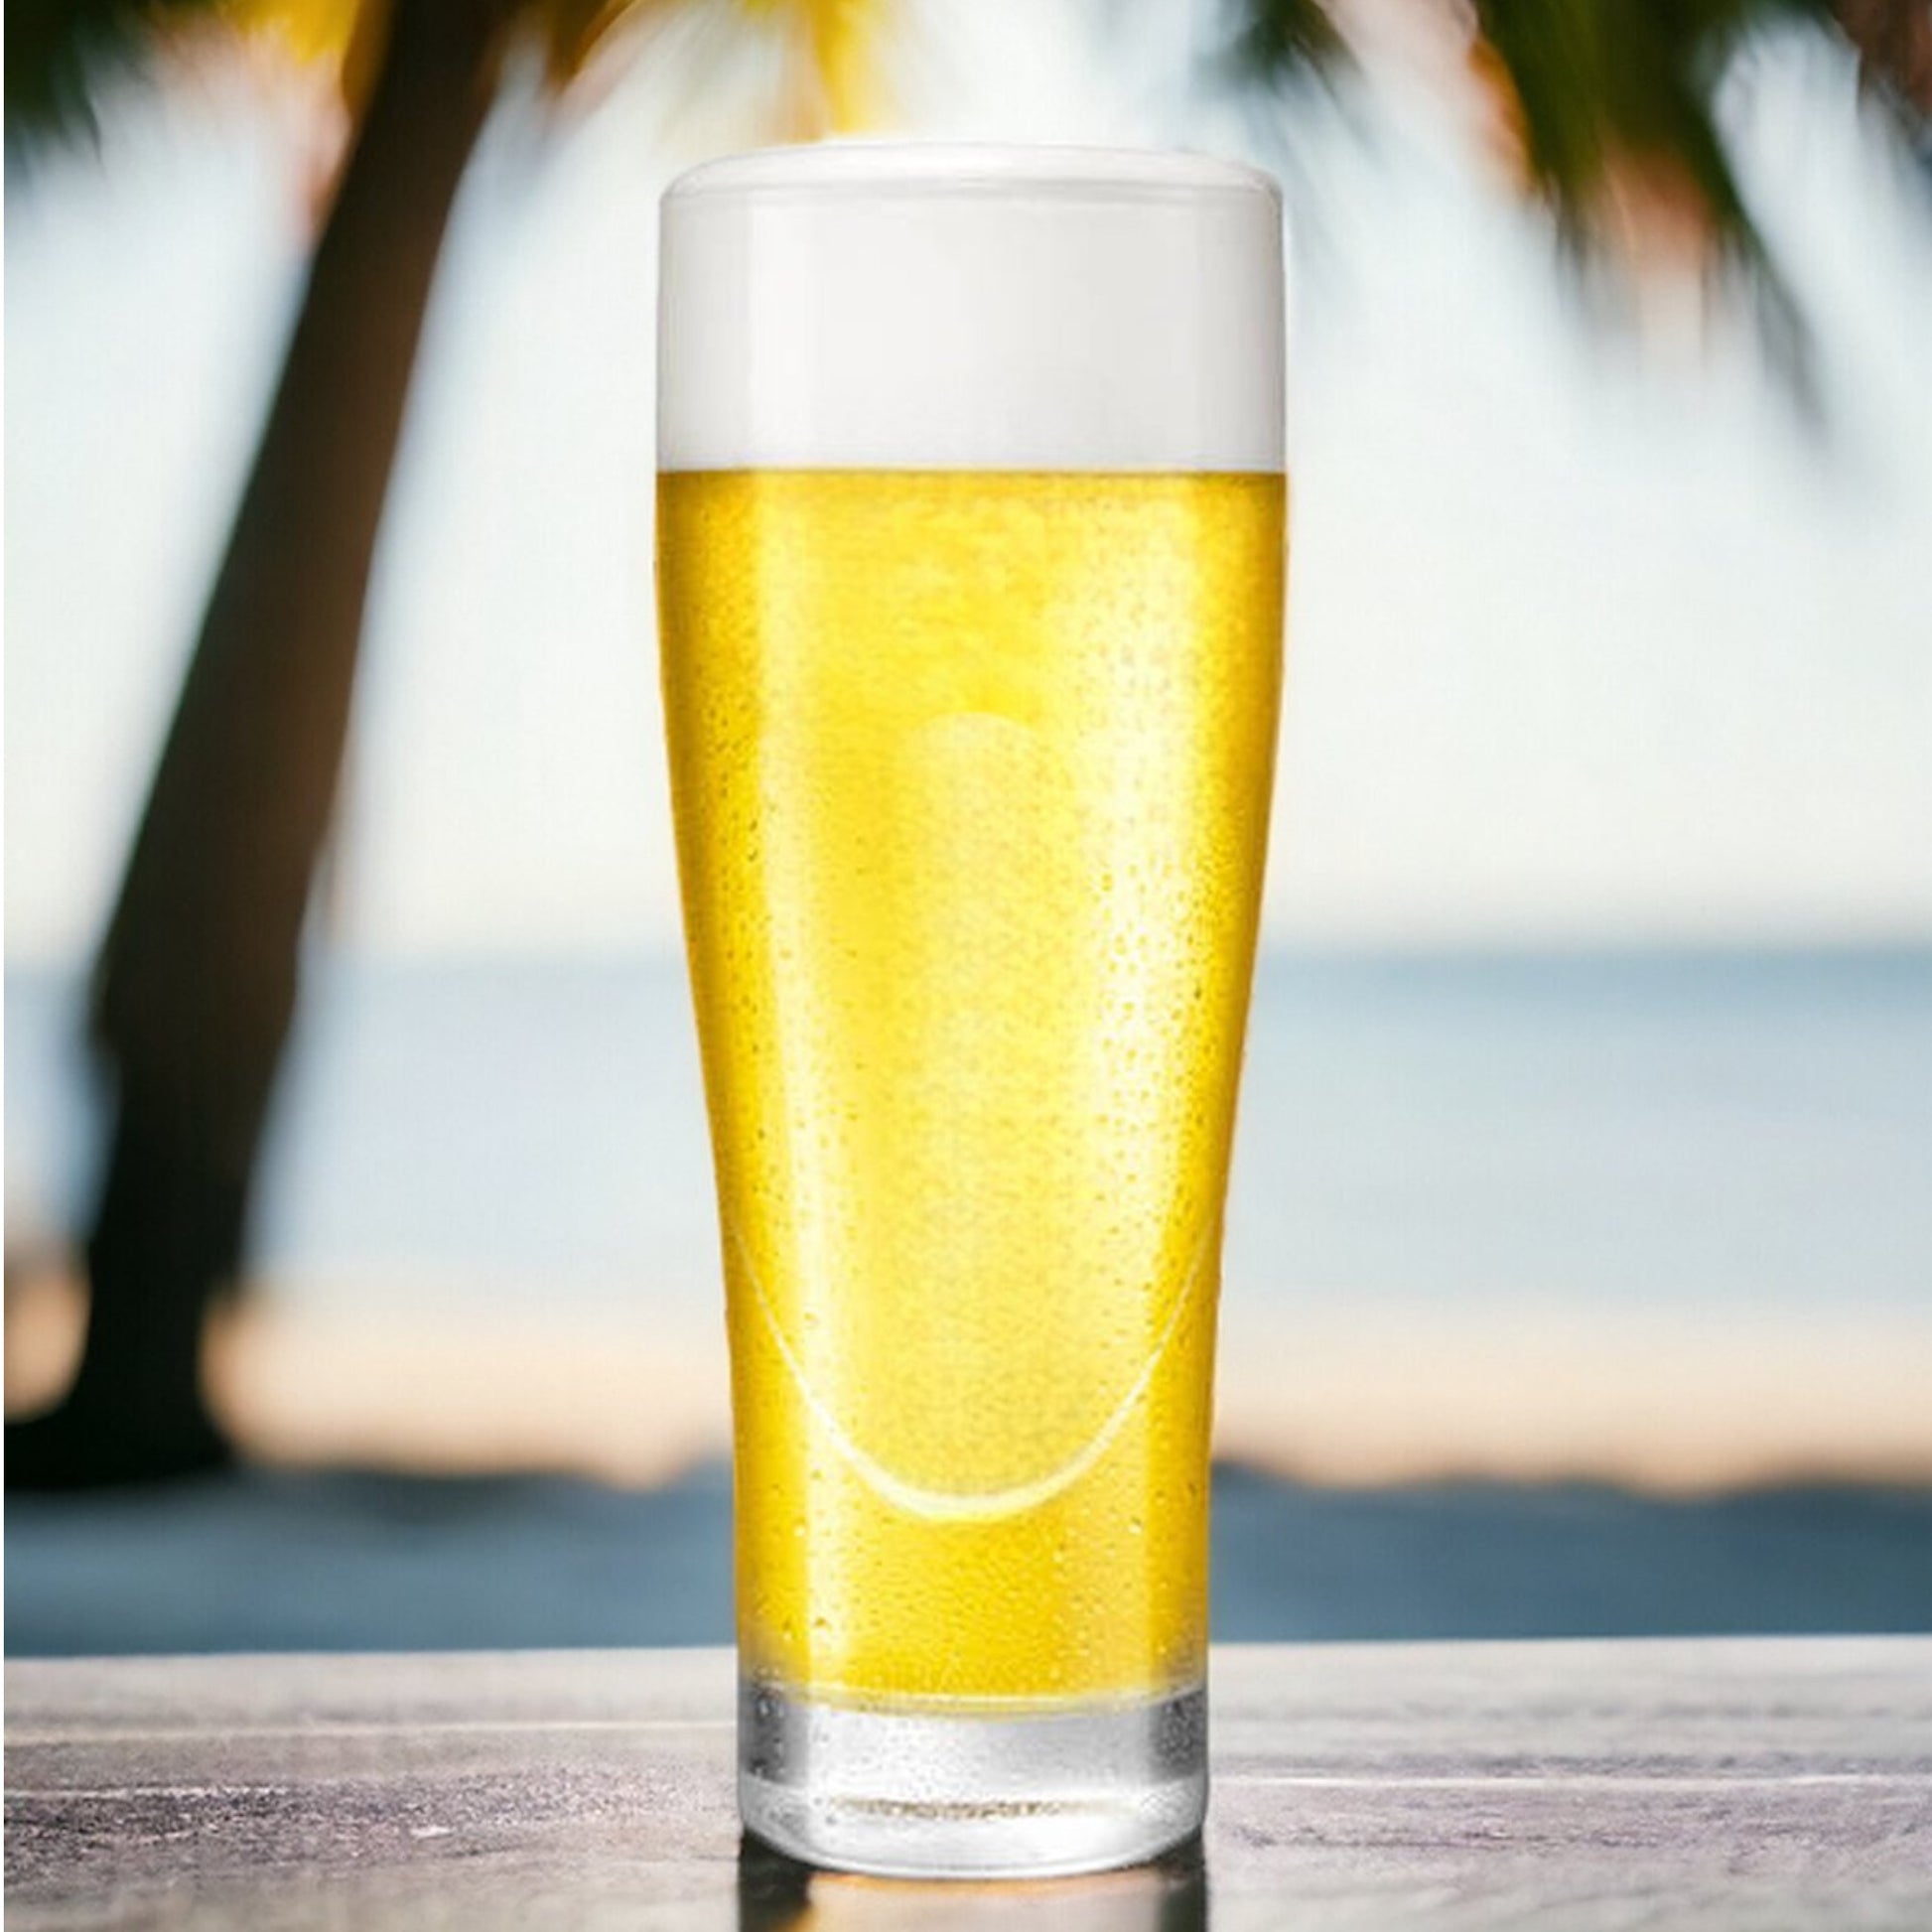 Bierglazen - (6 stuks) - 250ml - Bierglas - Bier - Glas - 25cl/0.25L - Pils - Glazen set - Hoogwaardige Kwaliteit - Vaasje - Speciaal Bier - Weizen